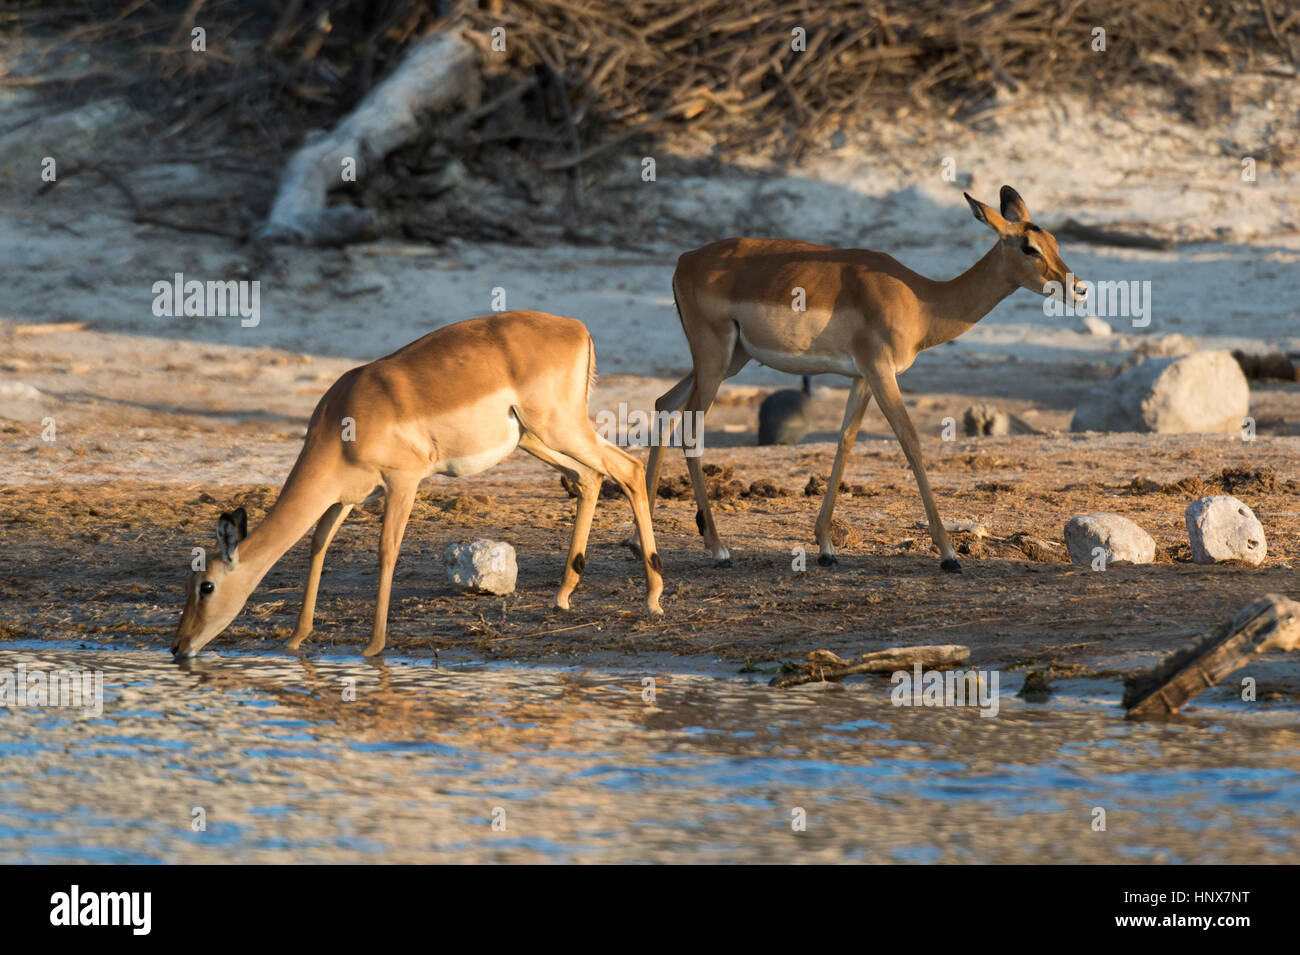 Deux l'Impala (Aepyceros melampus) boire dans la rivière, Savuti marsh, Chobe National Park, Botswana Banque D'Images